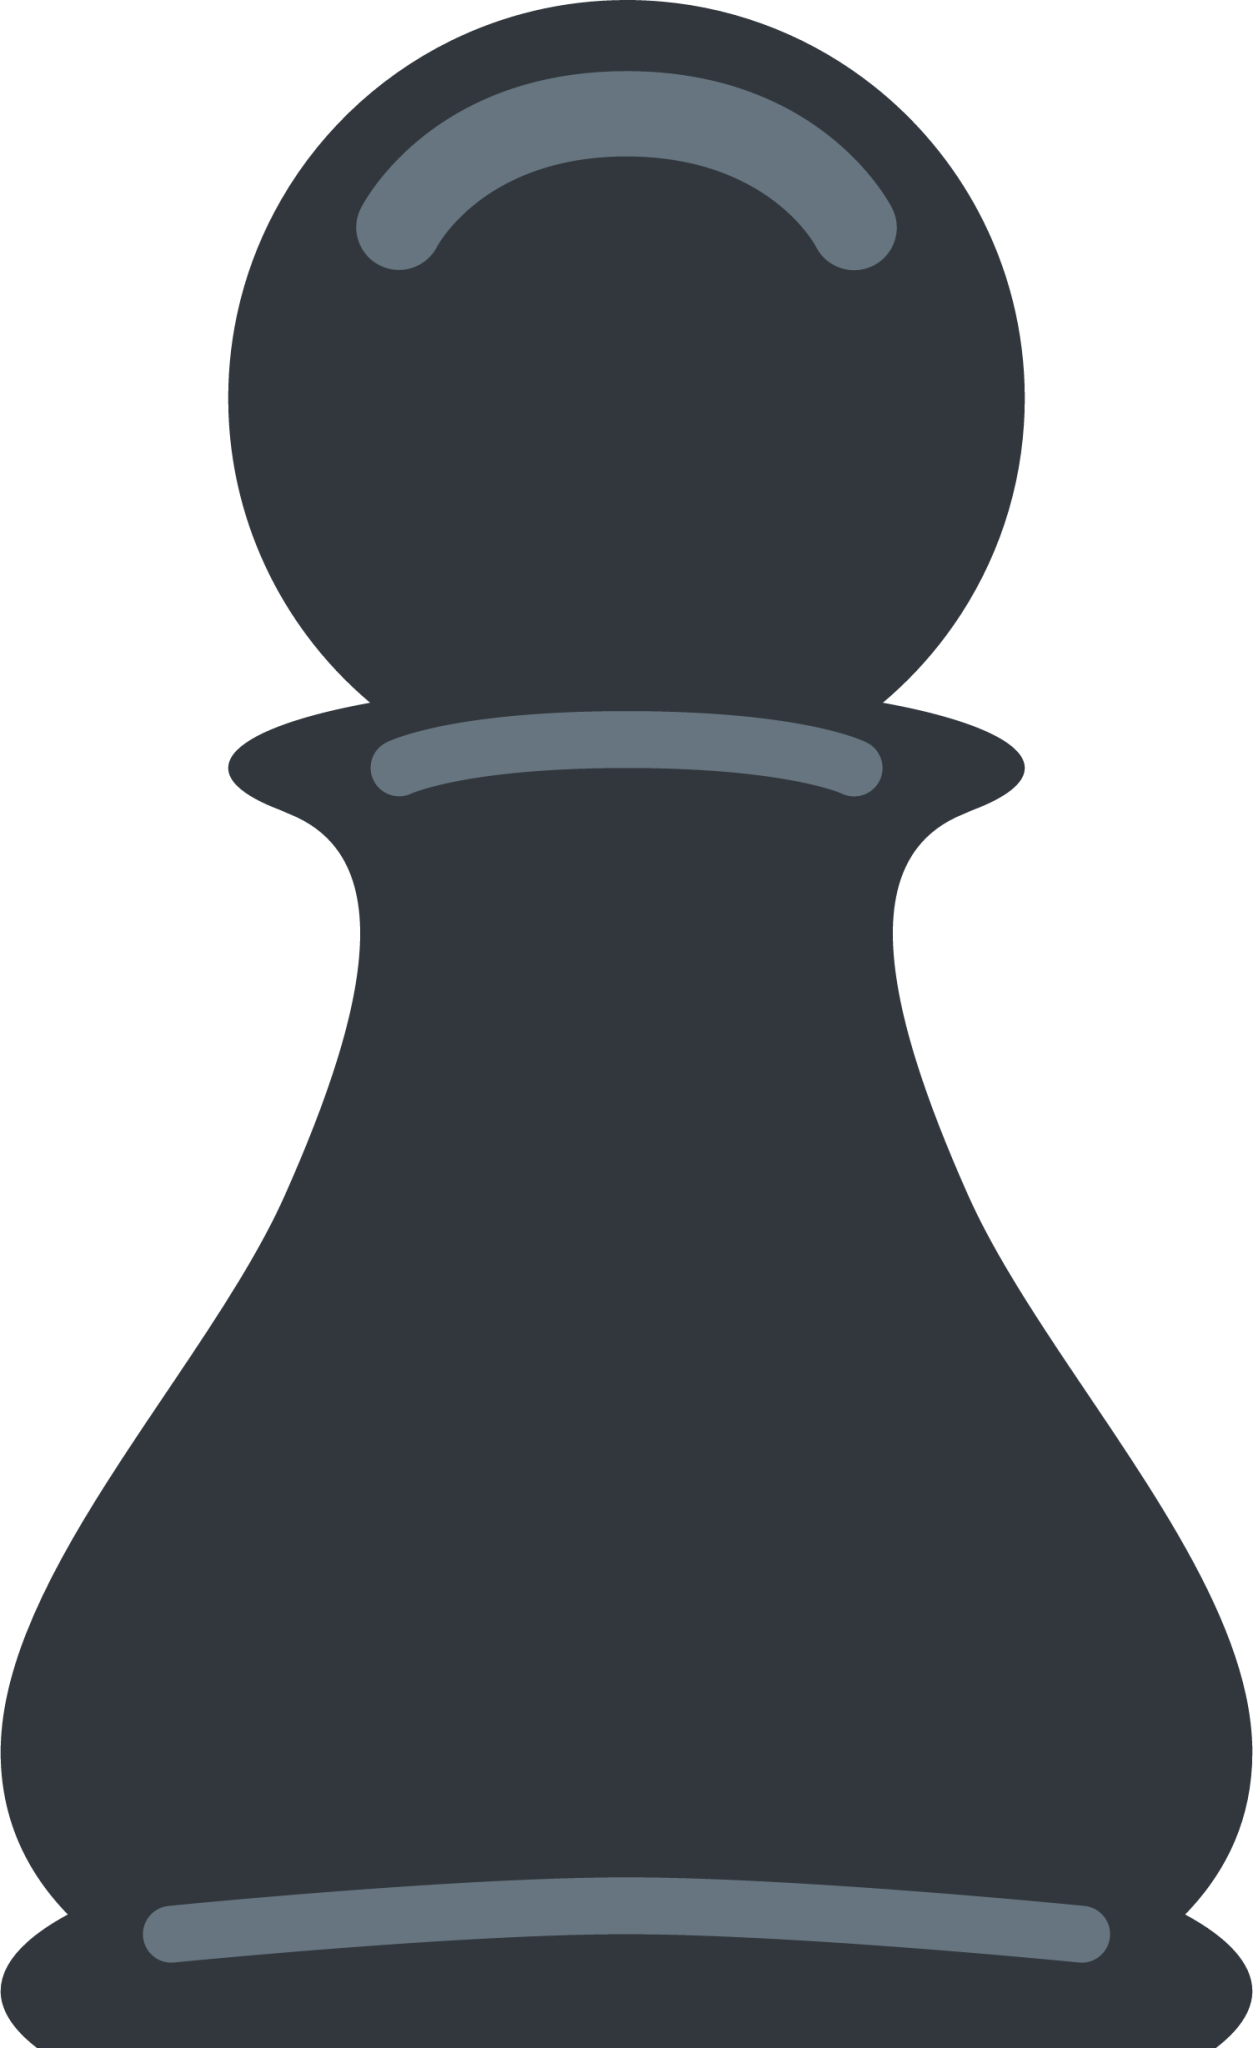 chess pawn emoji